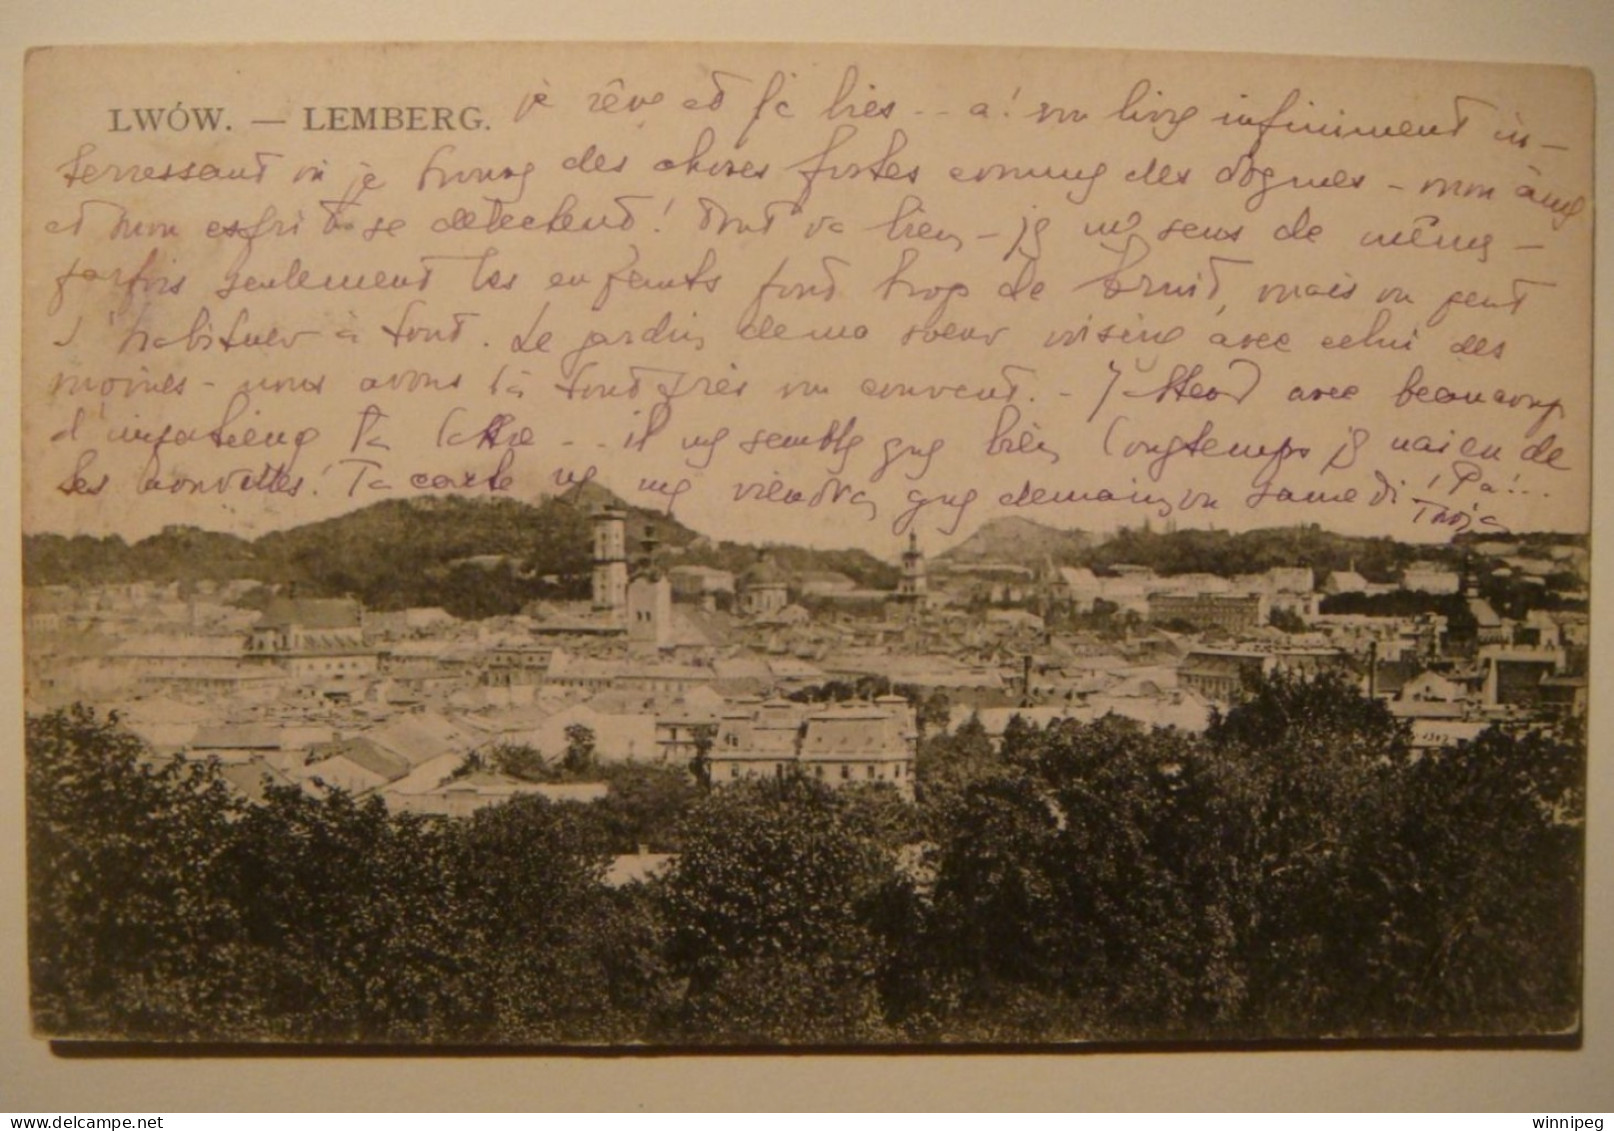 Lemberg Lwow.View.2 Pc's.L&P From Rawa Ruska To Belgium,1910.Ogolny Widok.Stafra,Fot.Ryk.Poland.Ukraine - Ukraine